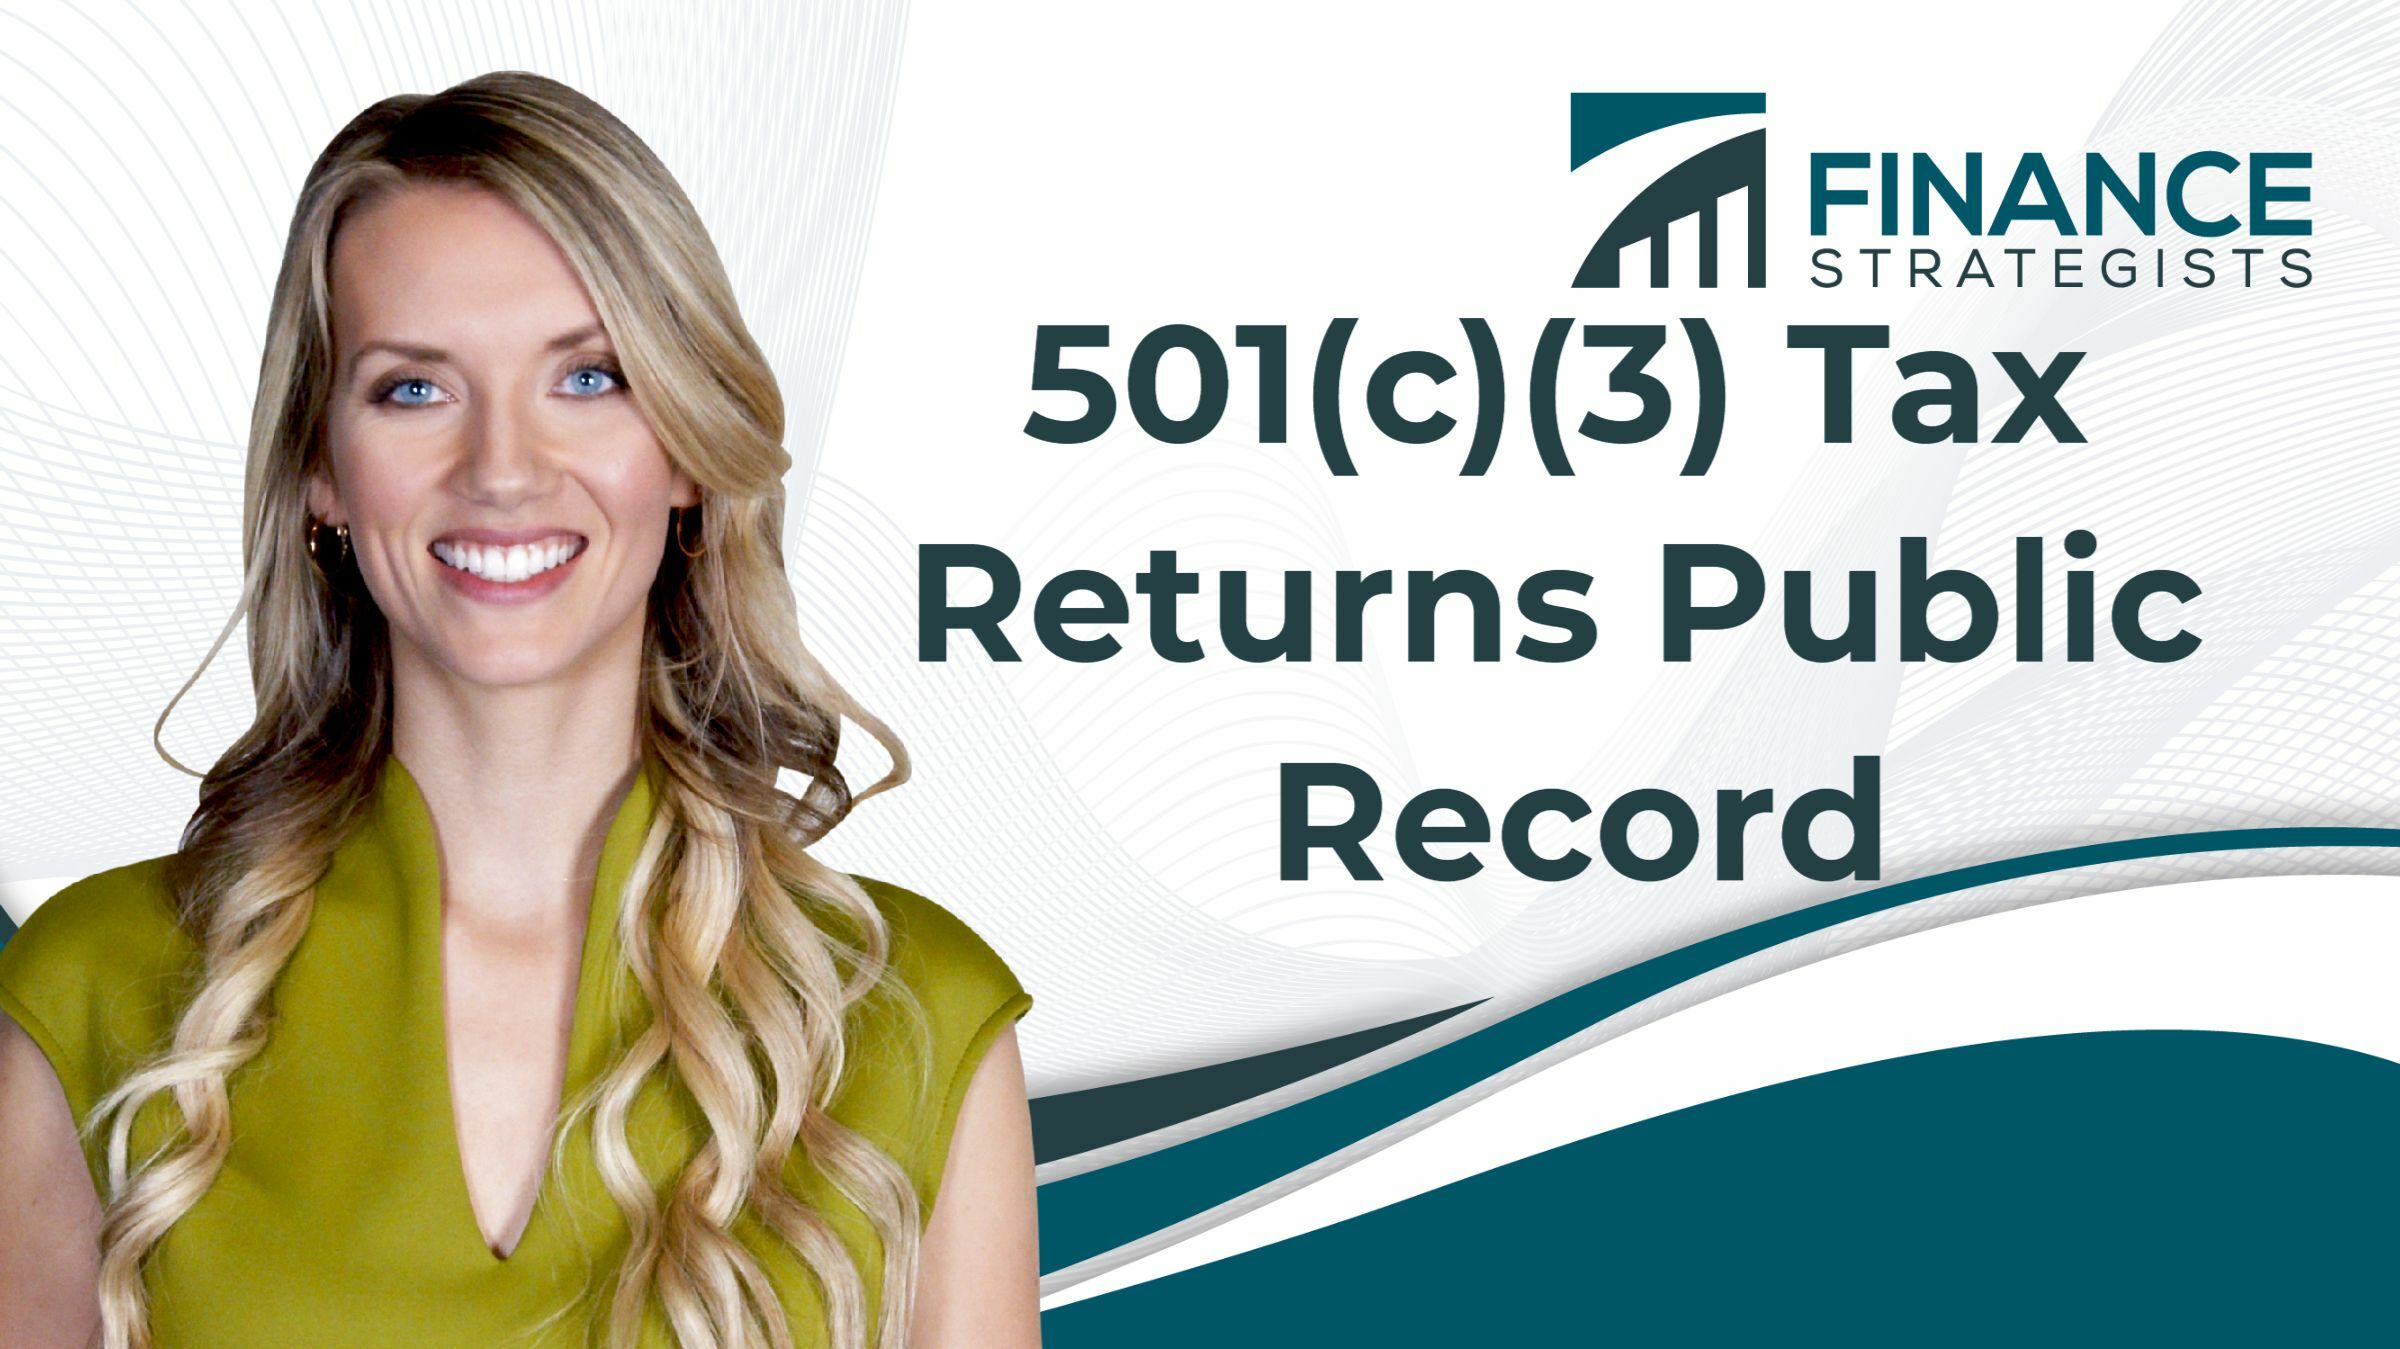 501-c-3-tax-returns-public-record-finance-strategists